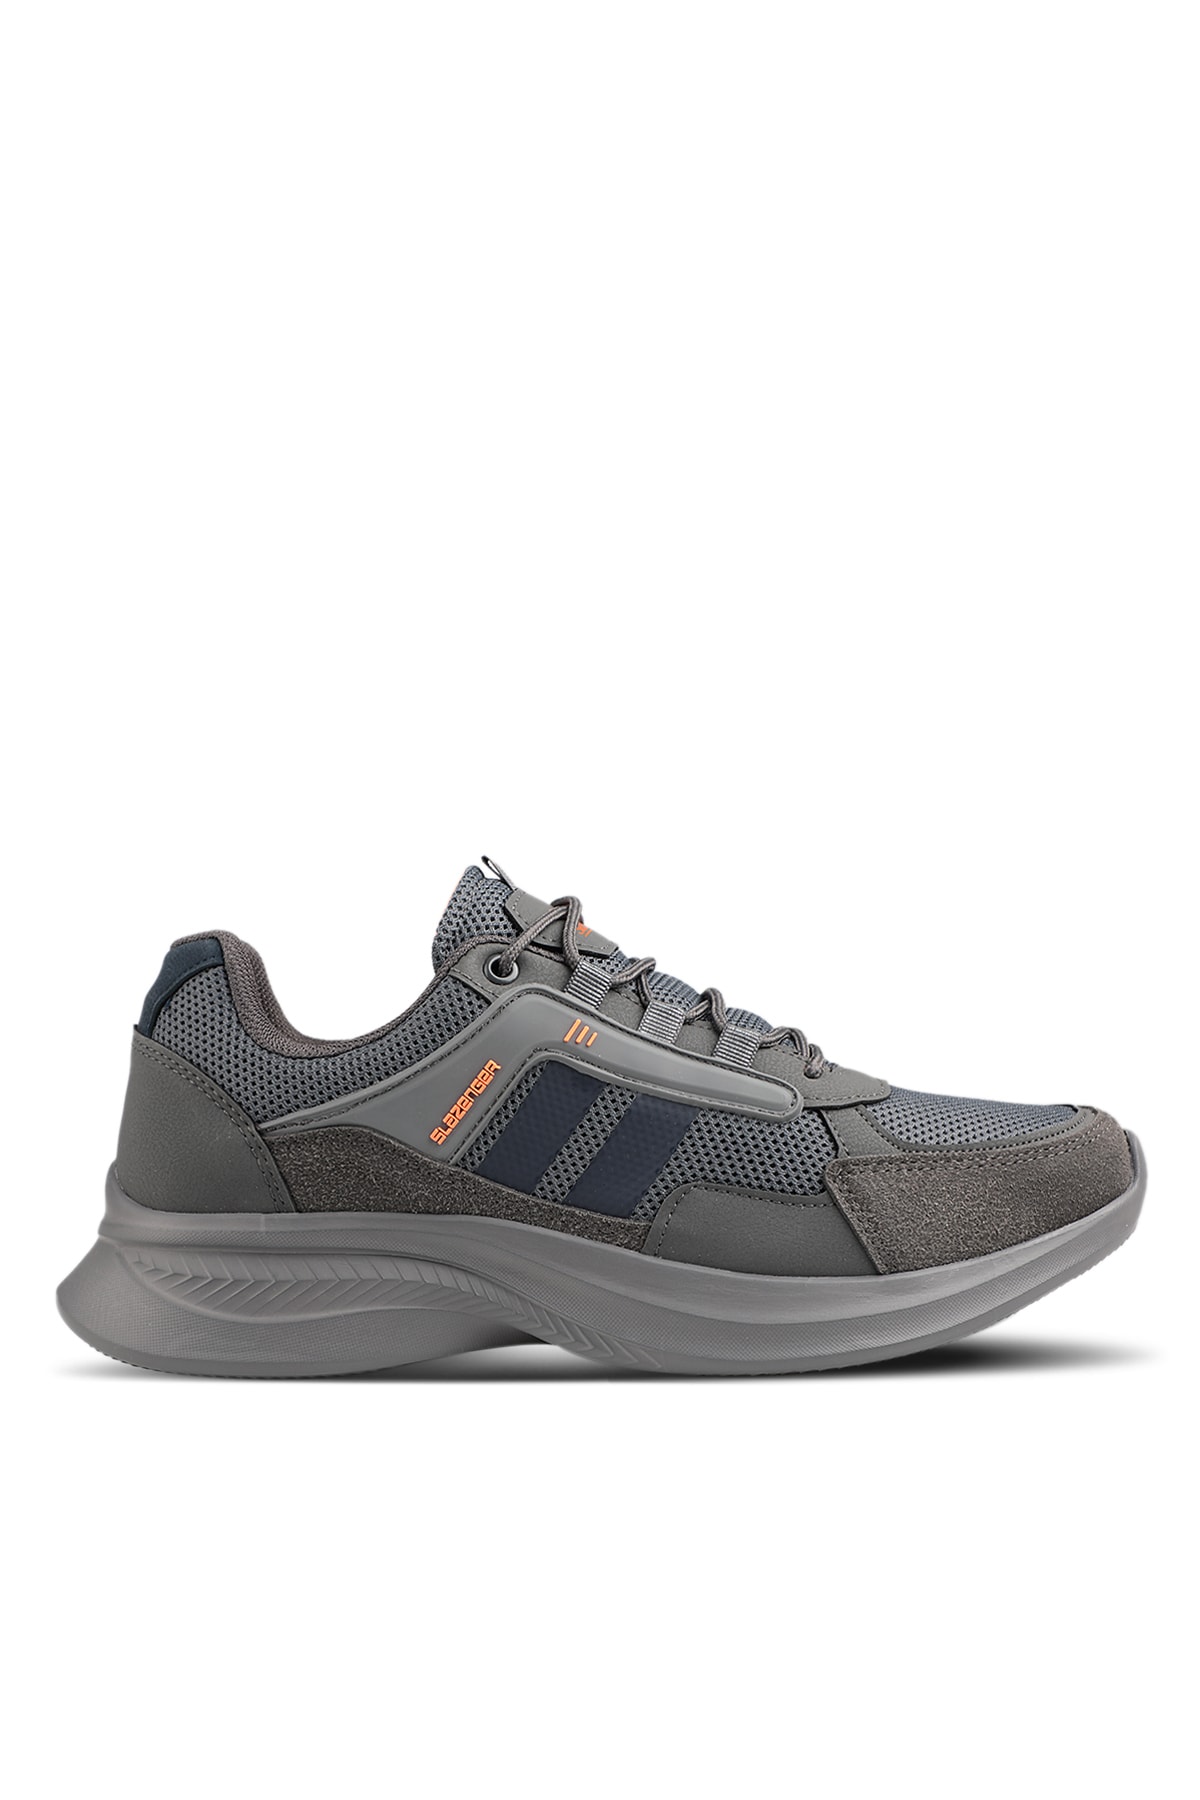 Slazenger Zodiac Sneaker Mens Shoes Dark Grey / Orange